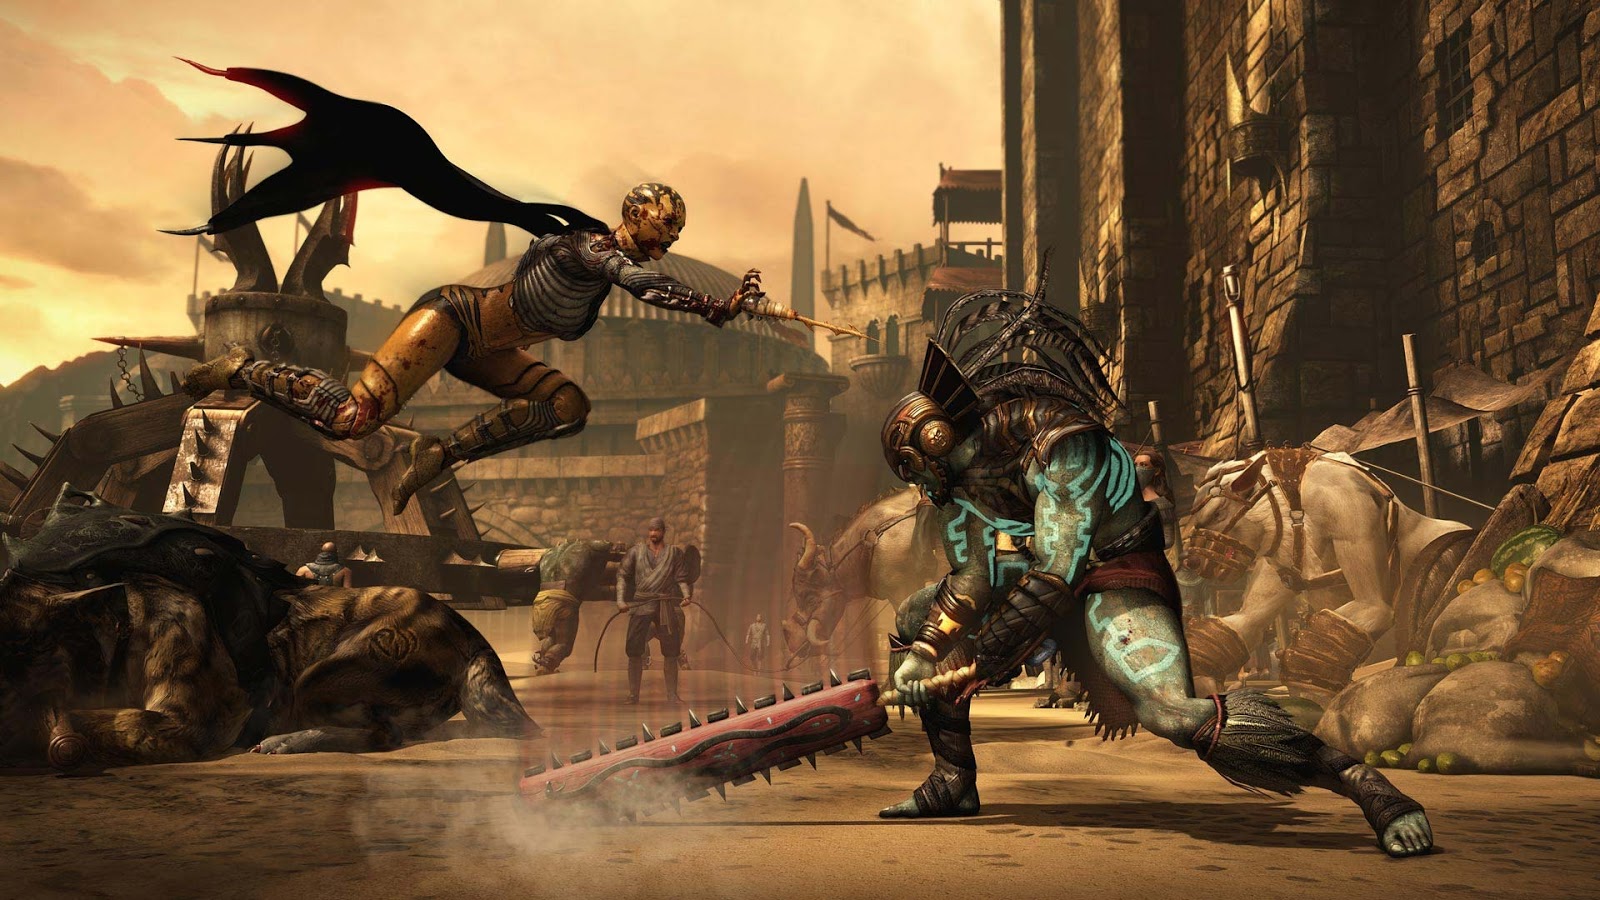 Download game Mortal Kombat X Full Crack